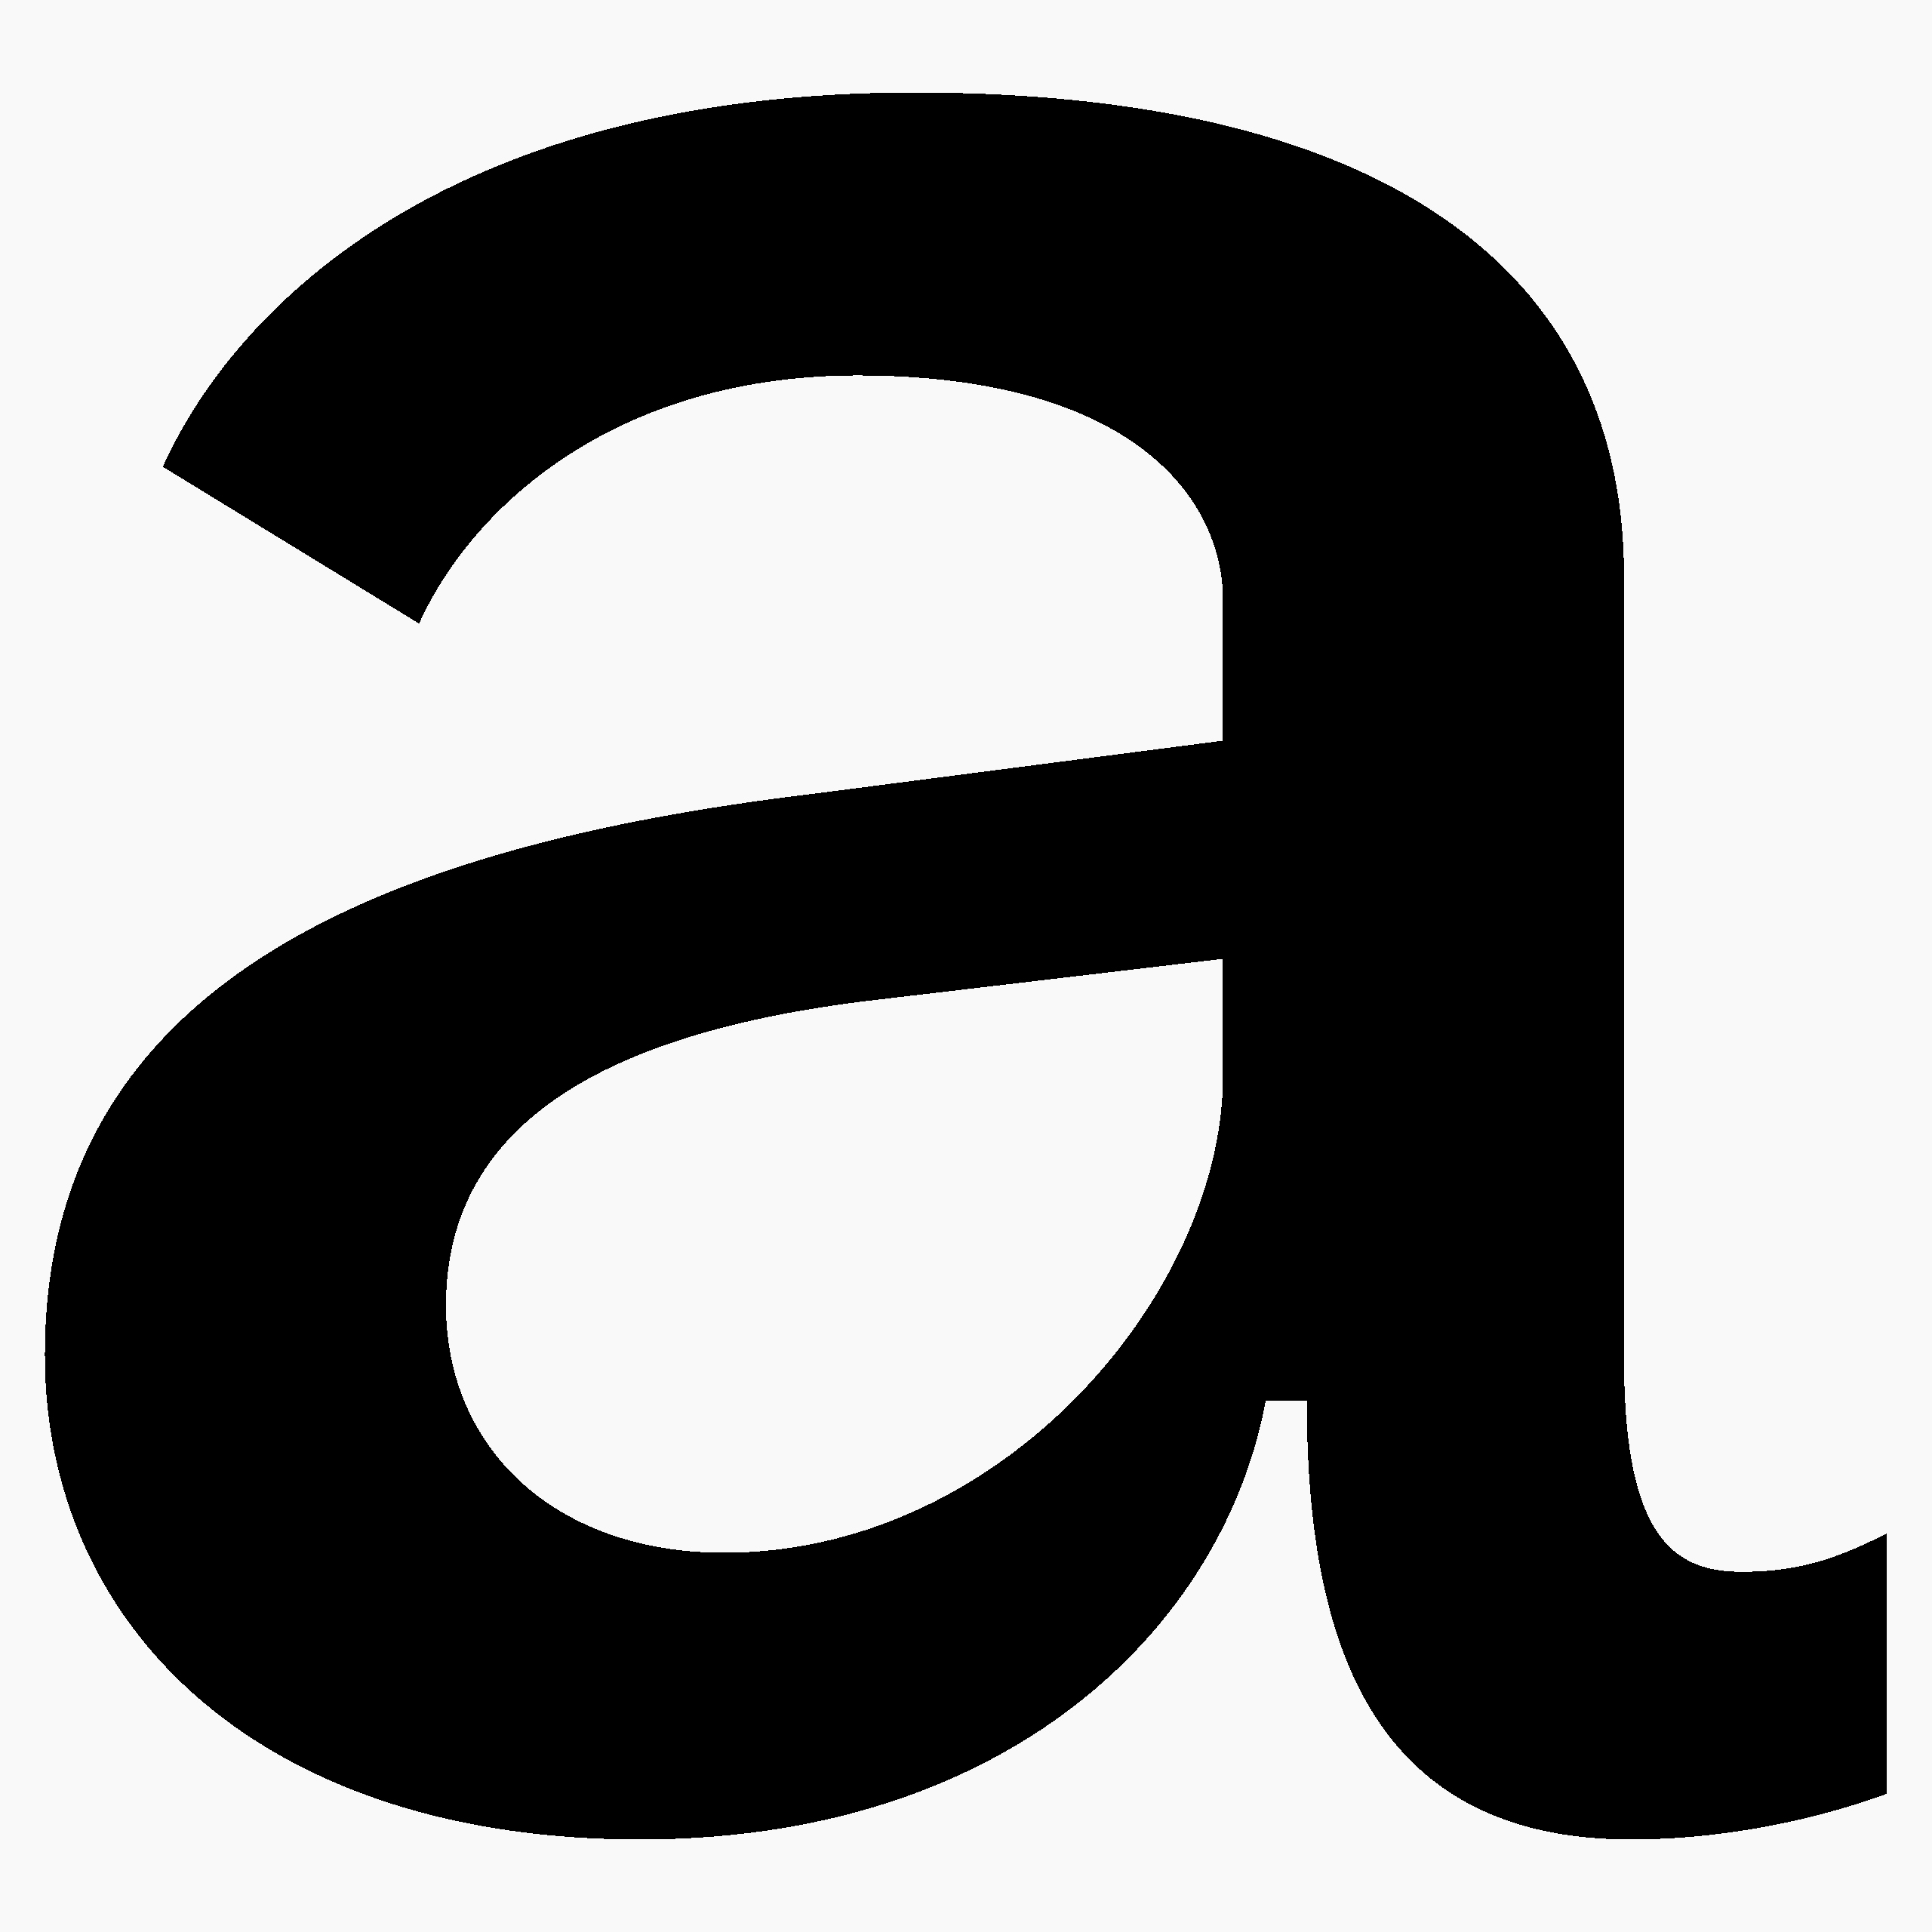 Daniel-Stuhlpfarrer_typedesign_graphicdesign_custom-font_custom-typeface_typography_Melange-2